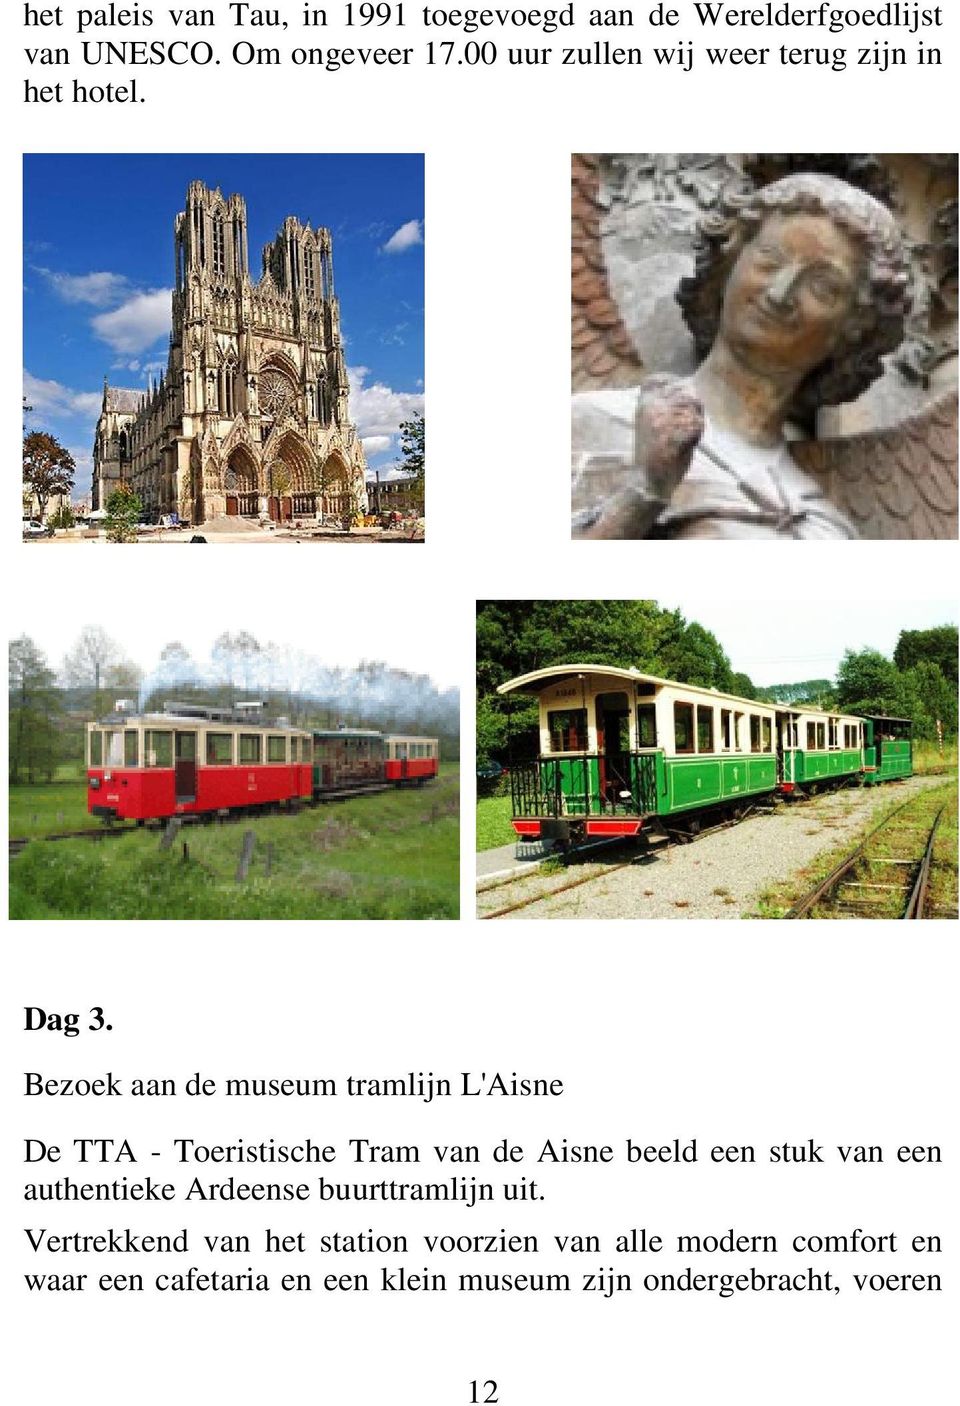 Bezoek aan de museum tramlijn L'Aisne De TTA - Toeristische Tram van de Aisne beeld een stuk van een